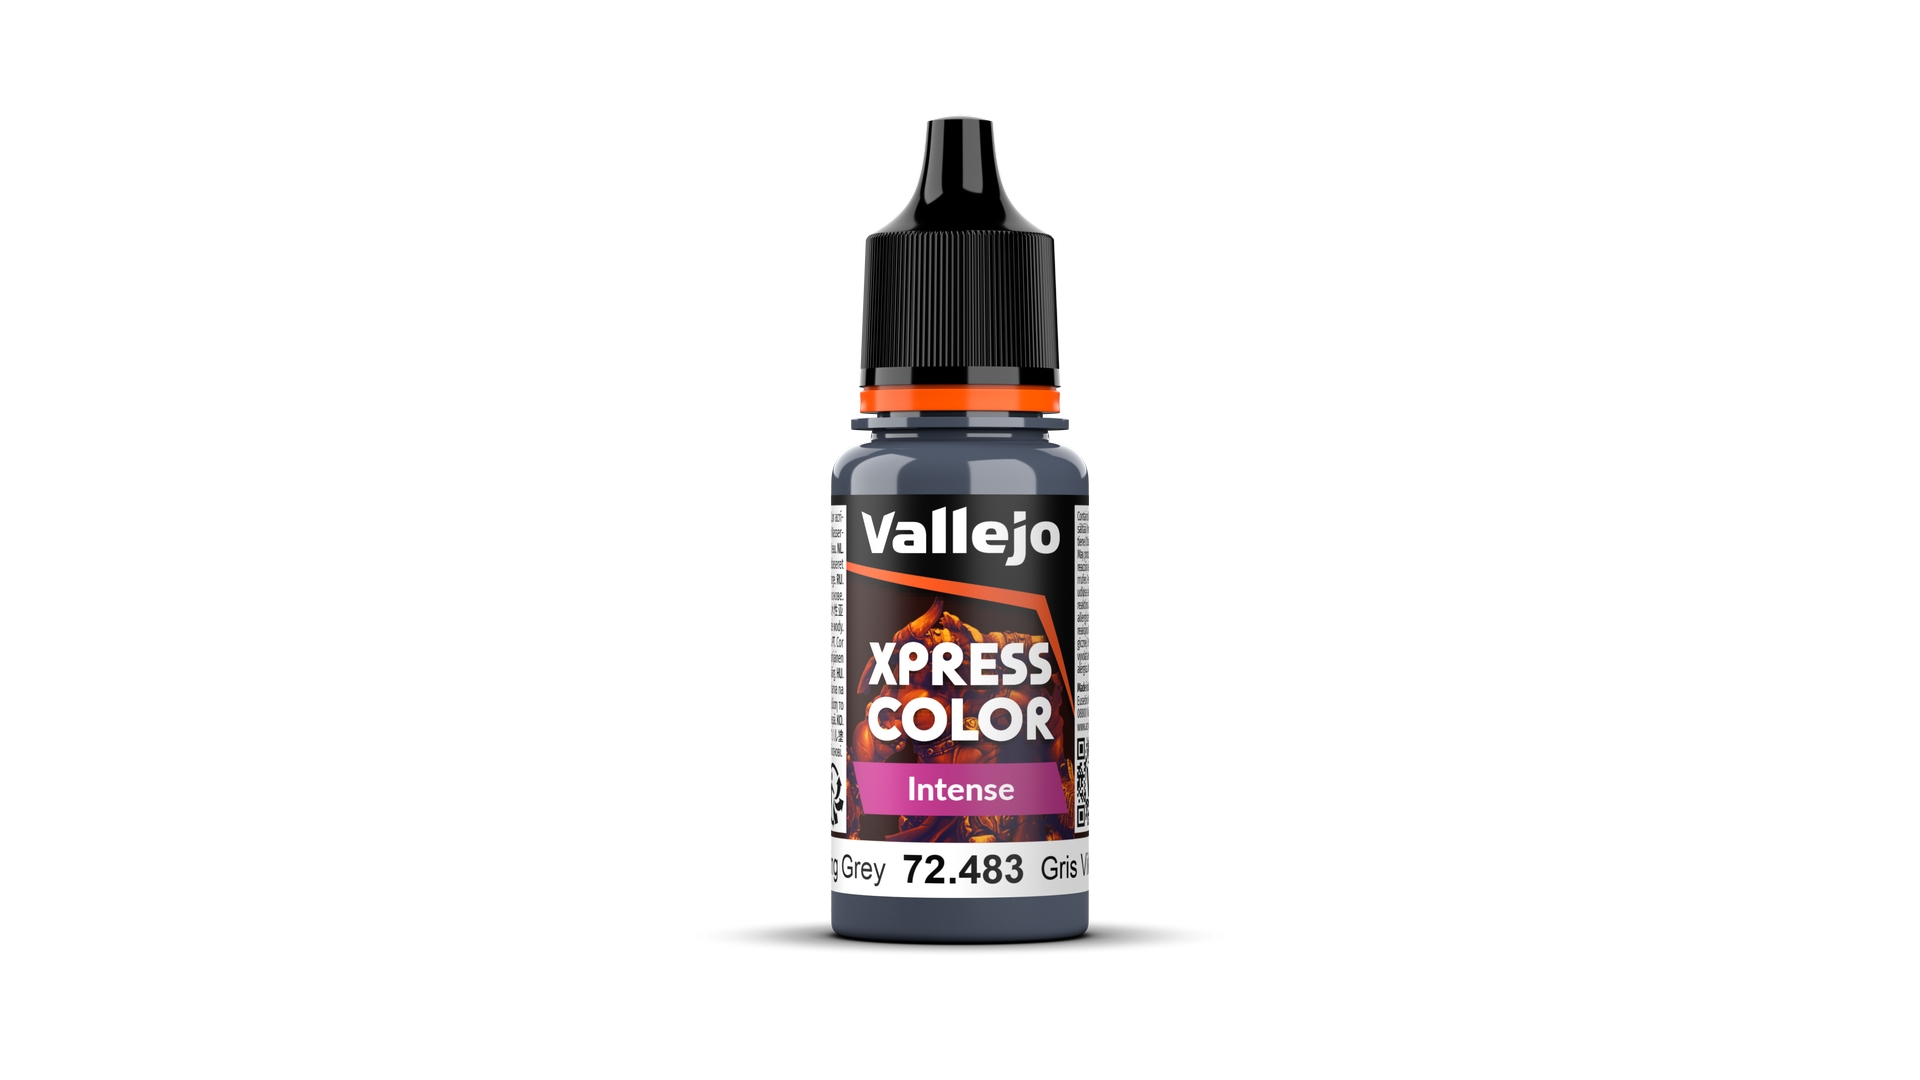 Xpress Color Wikinger-Grau Intense / Viking Grey Intense, 18 ml